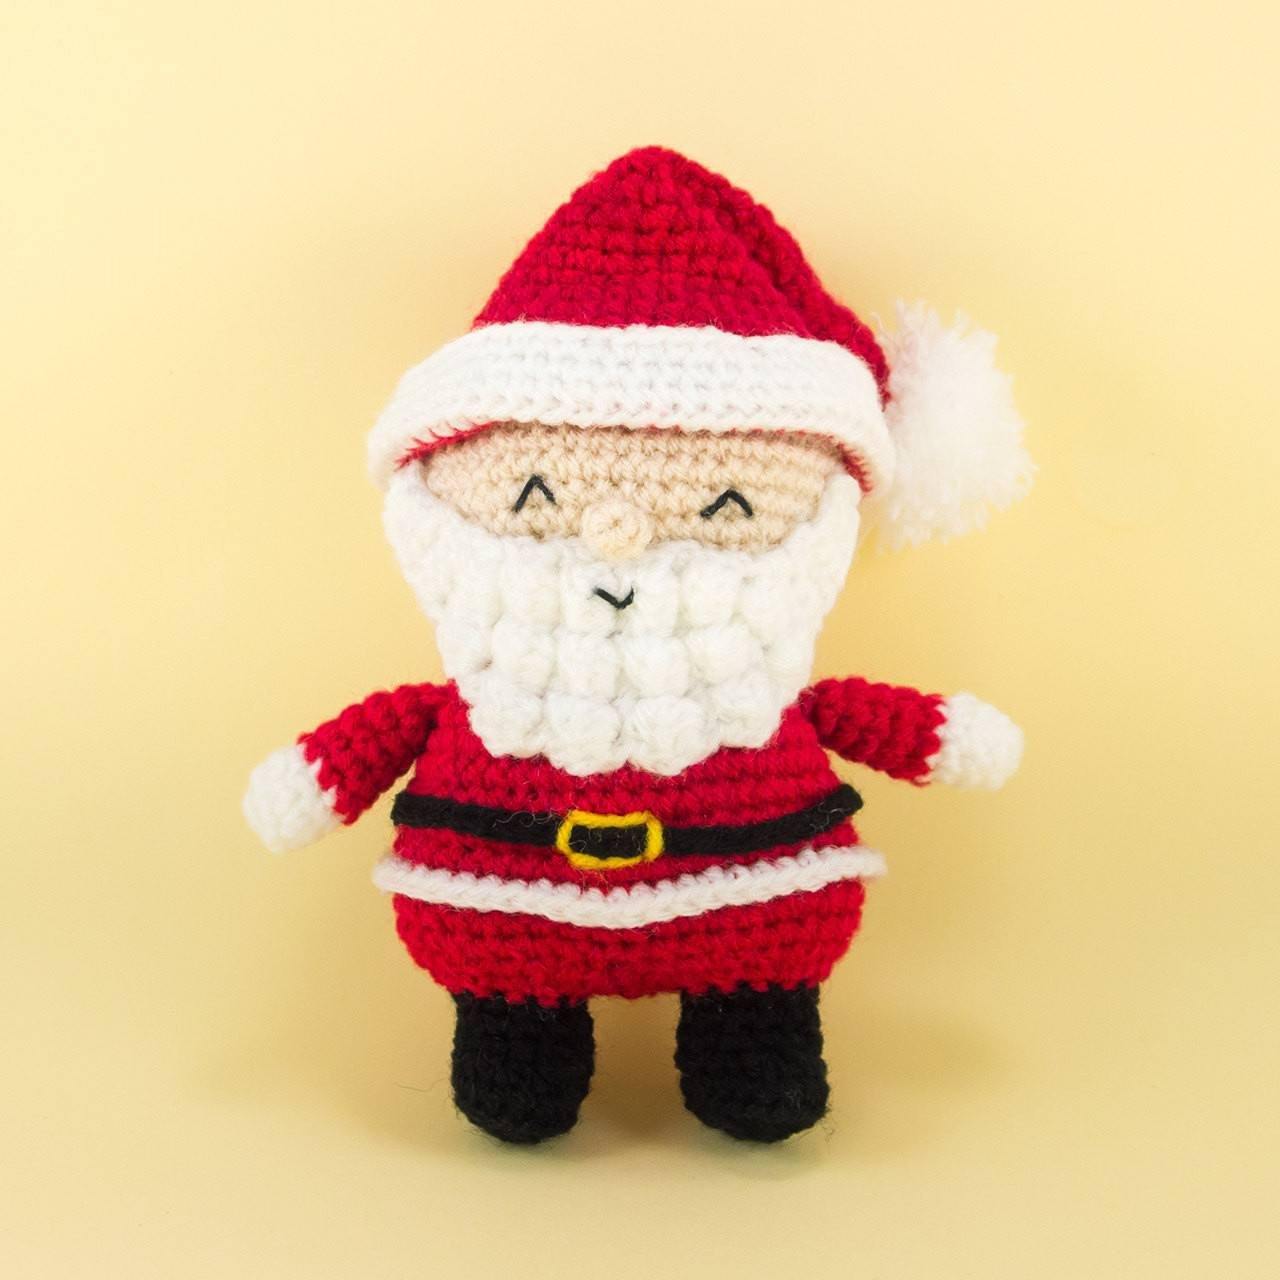 Crochet Santa Claus Amigurumi